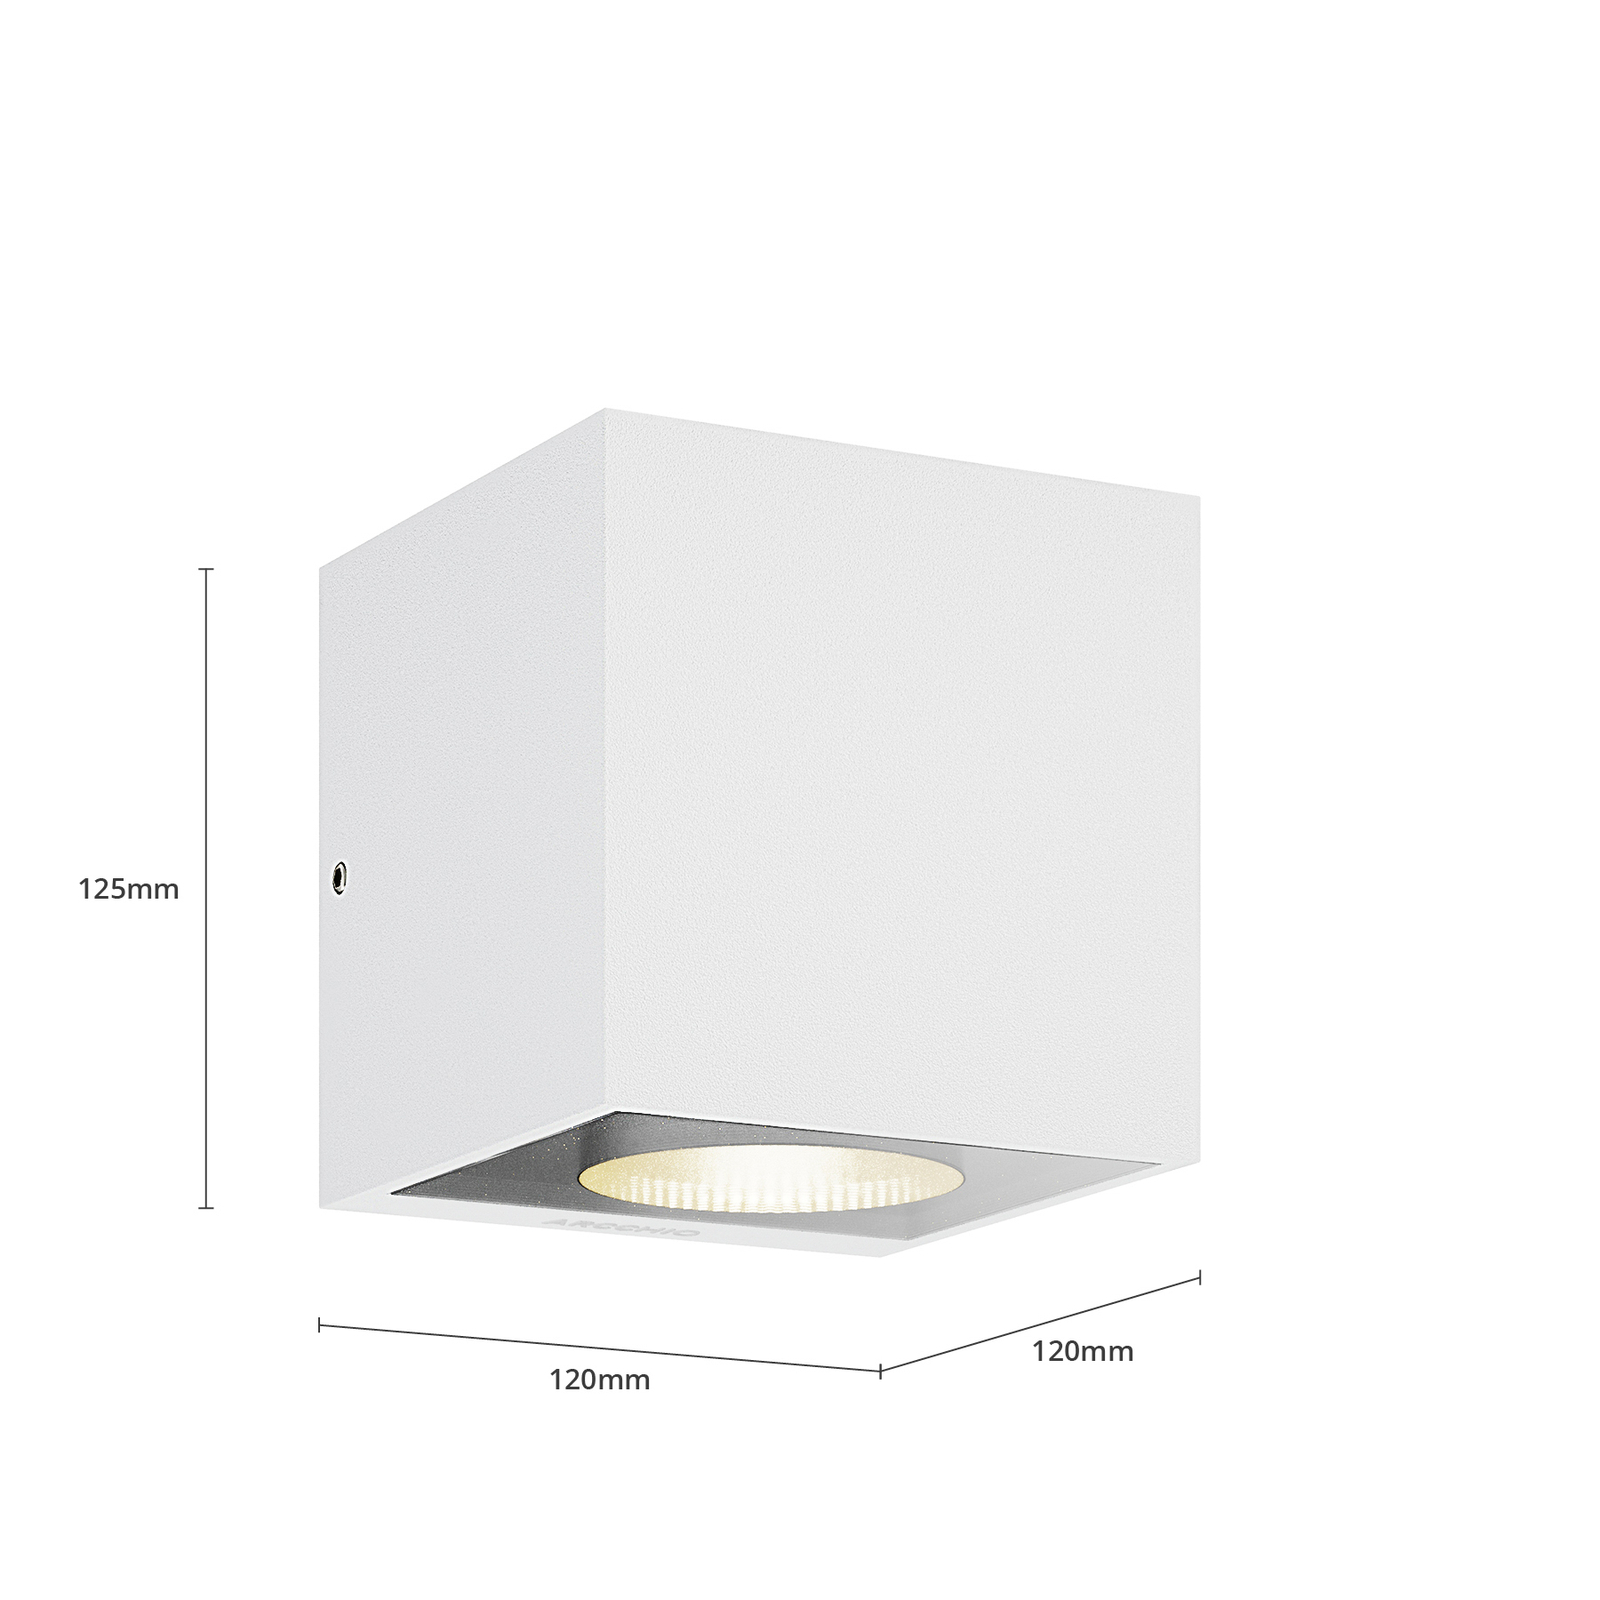 Arcchio Tassnim LED kültéri fali lámpa fehér 1-lámpás.